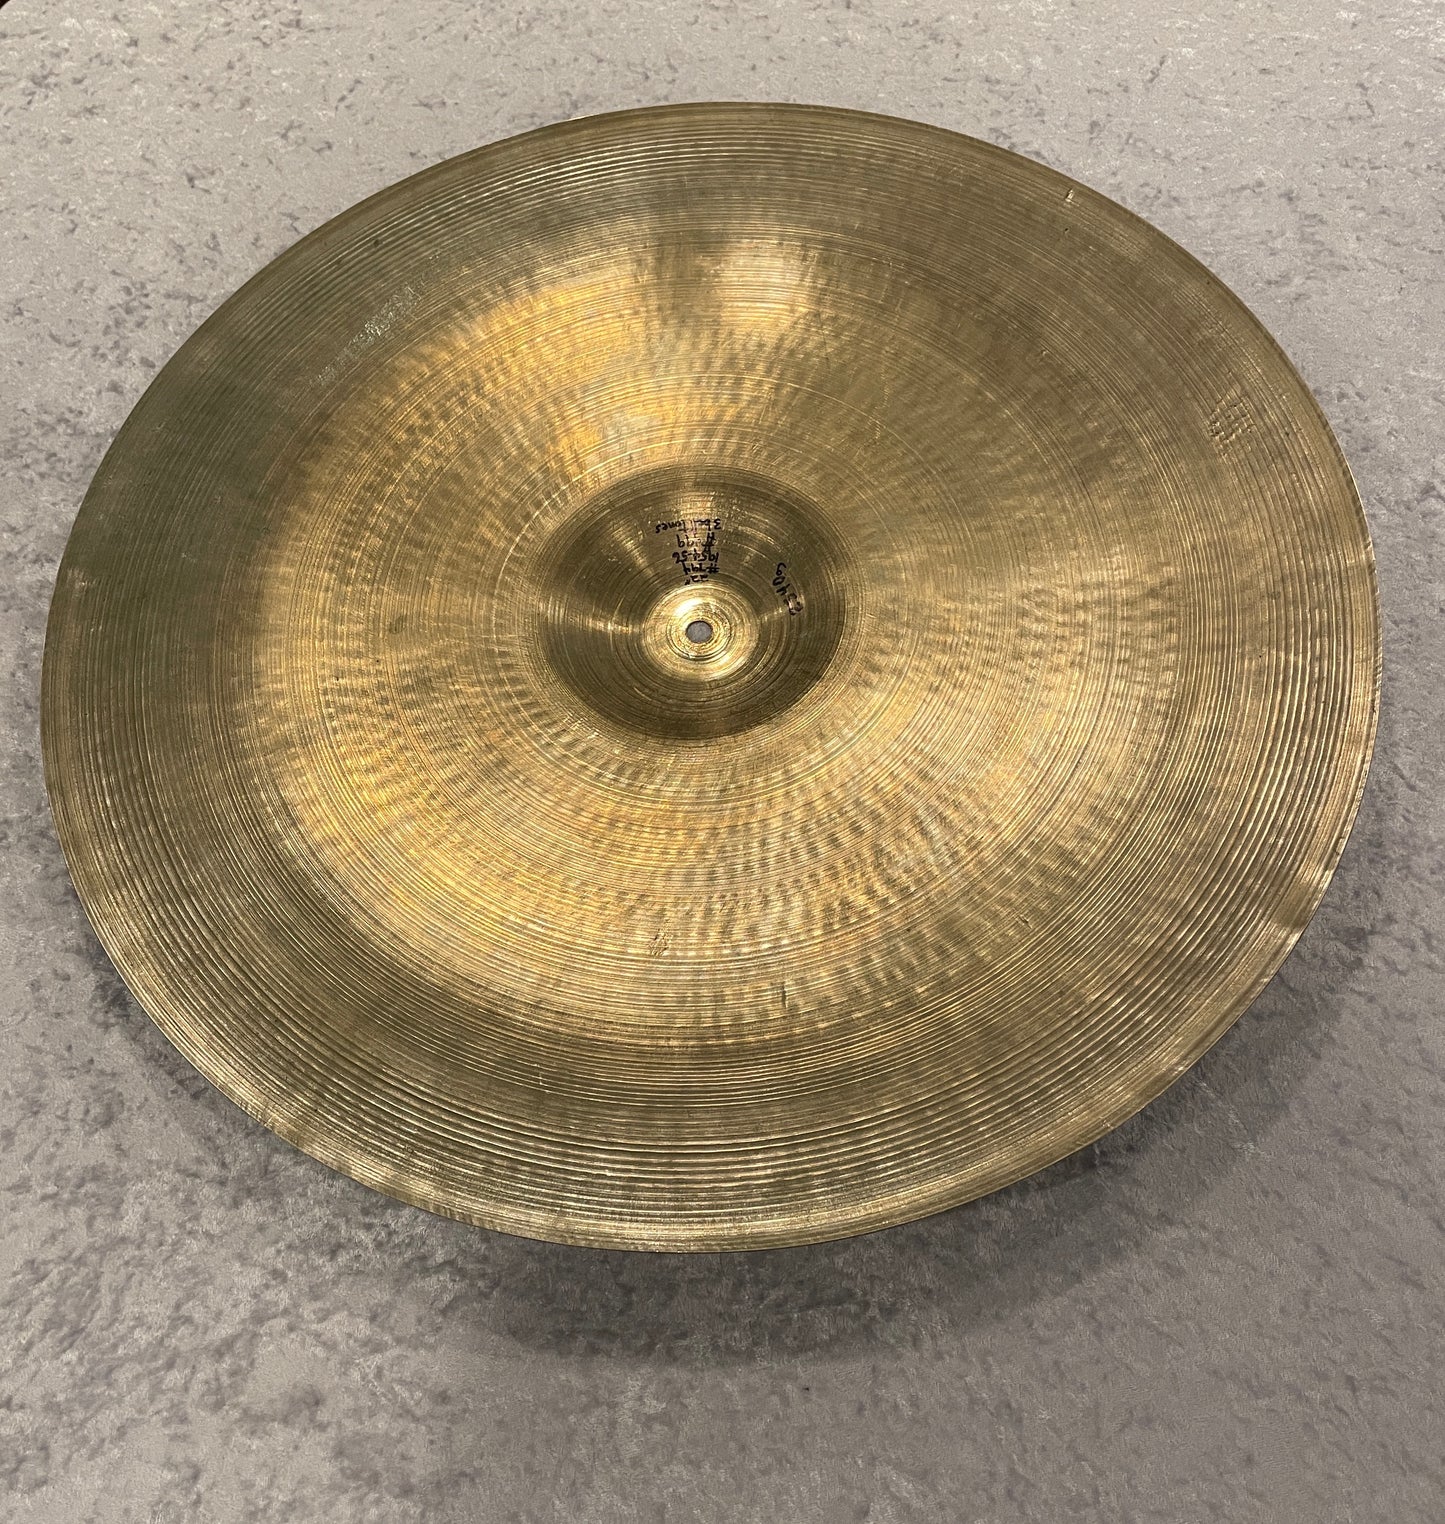 22" Zildjian A 1954-56 Large Stamp Ride Cymbal 2540g #794